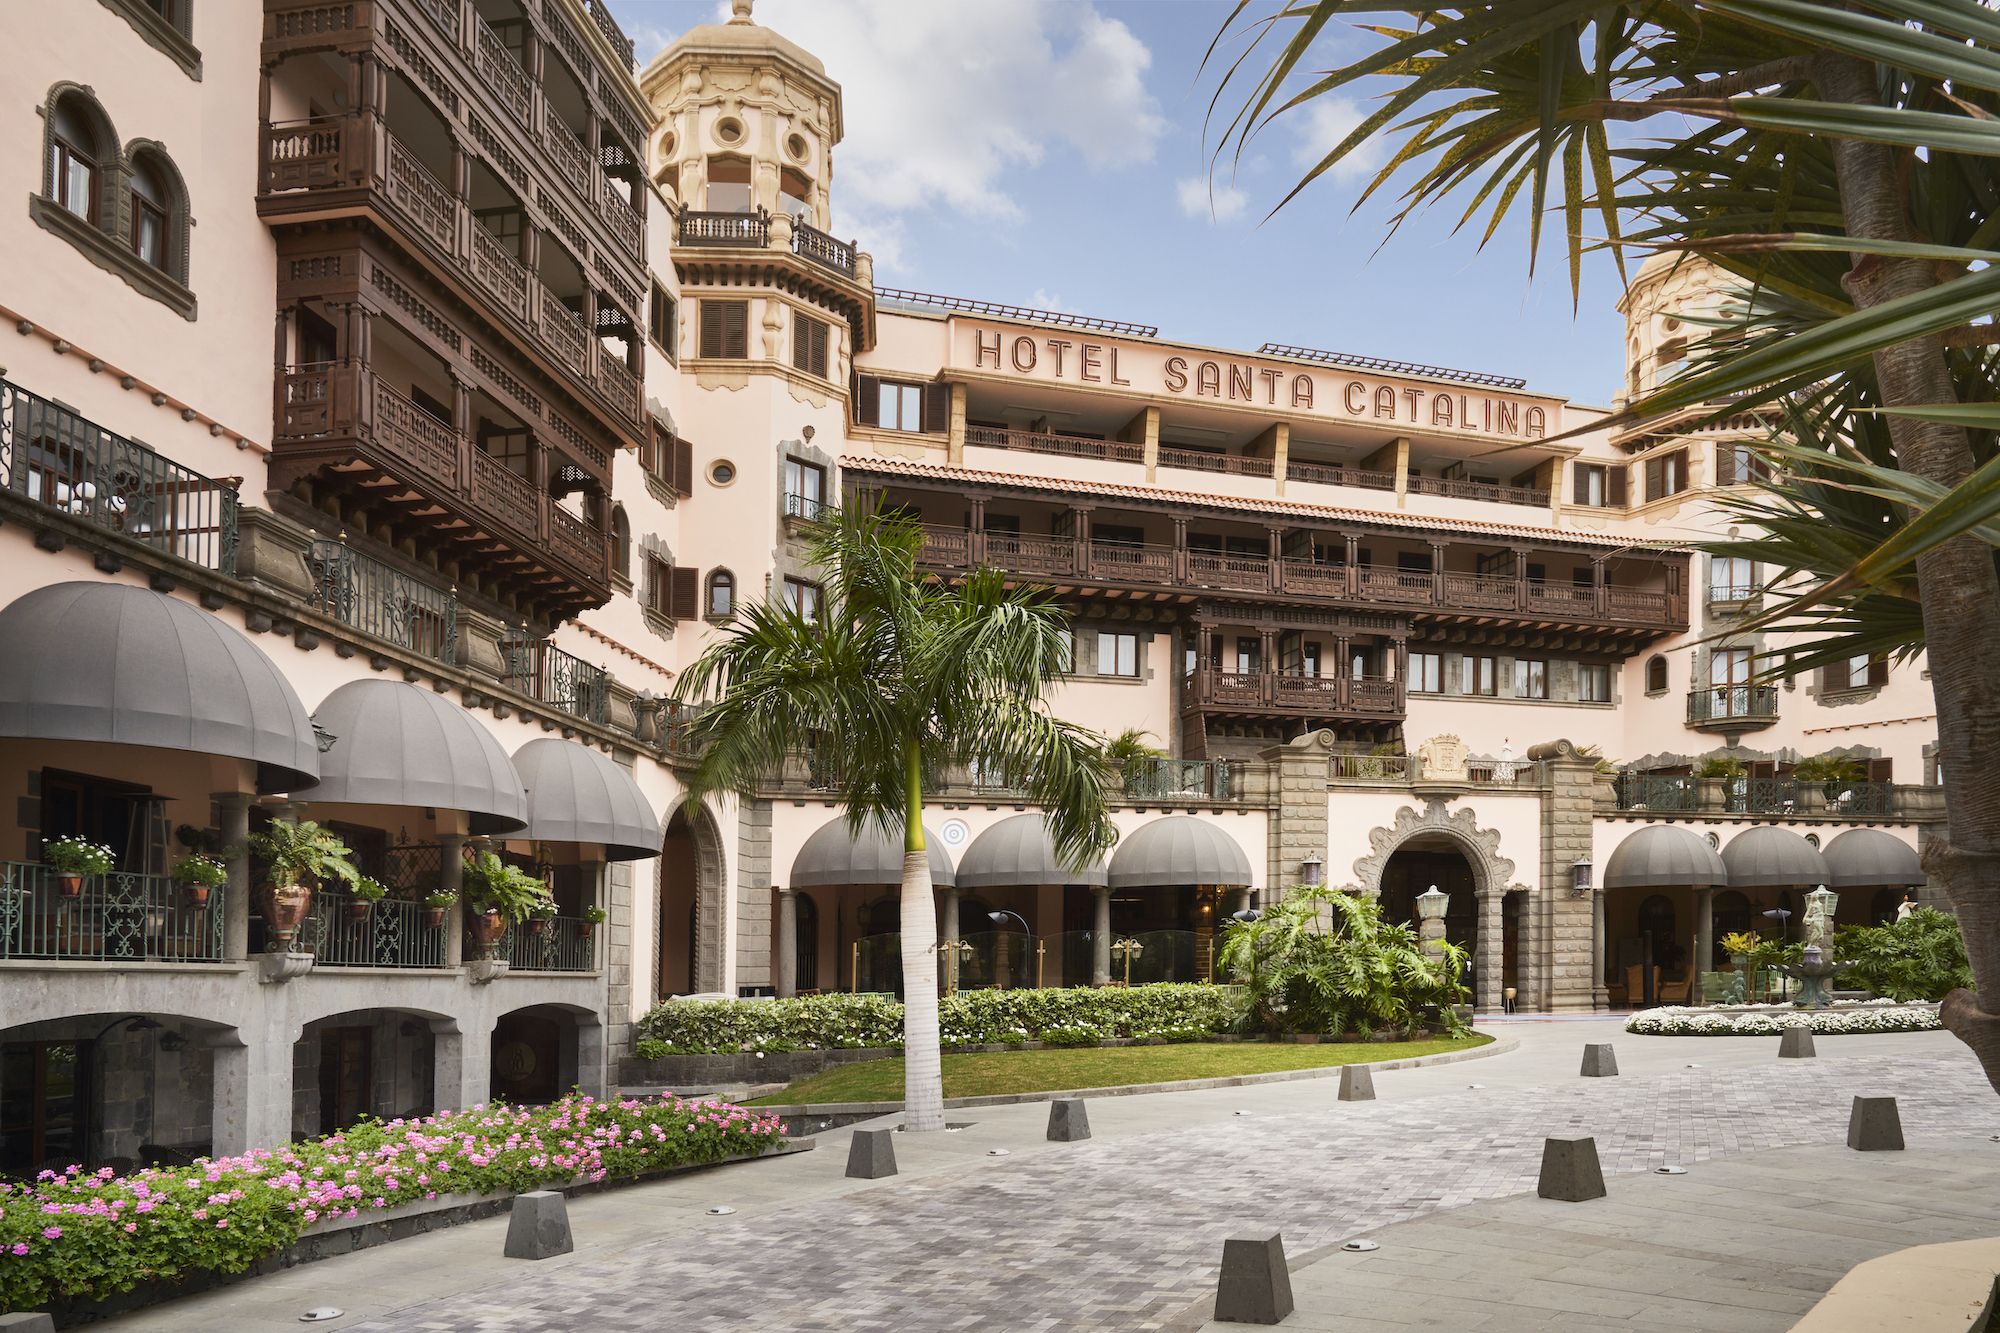 Grasa Mediador Odiseo Santa Catalina (Las Palmas): un hotel con mucha historia